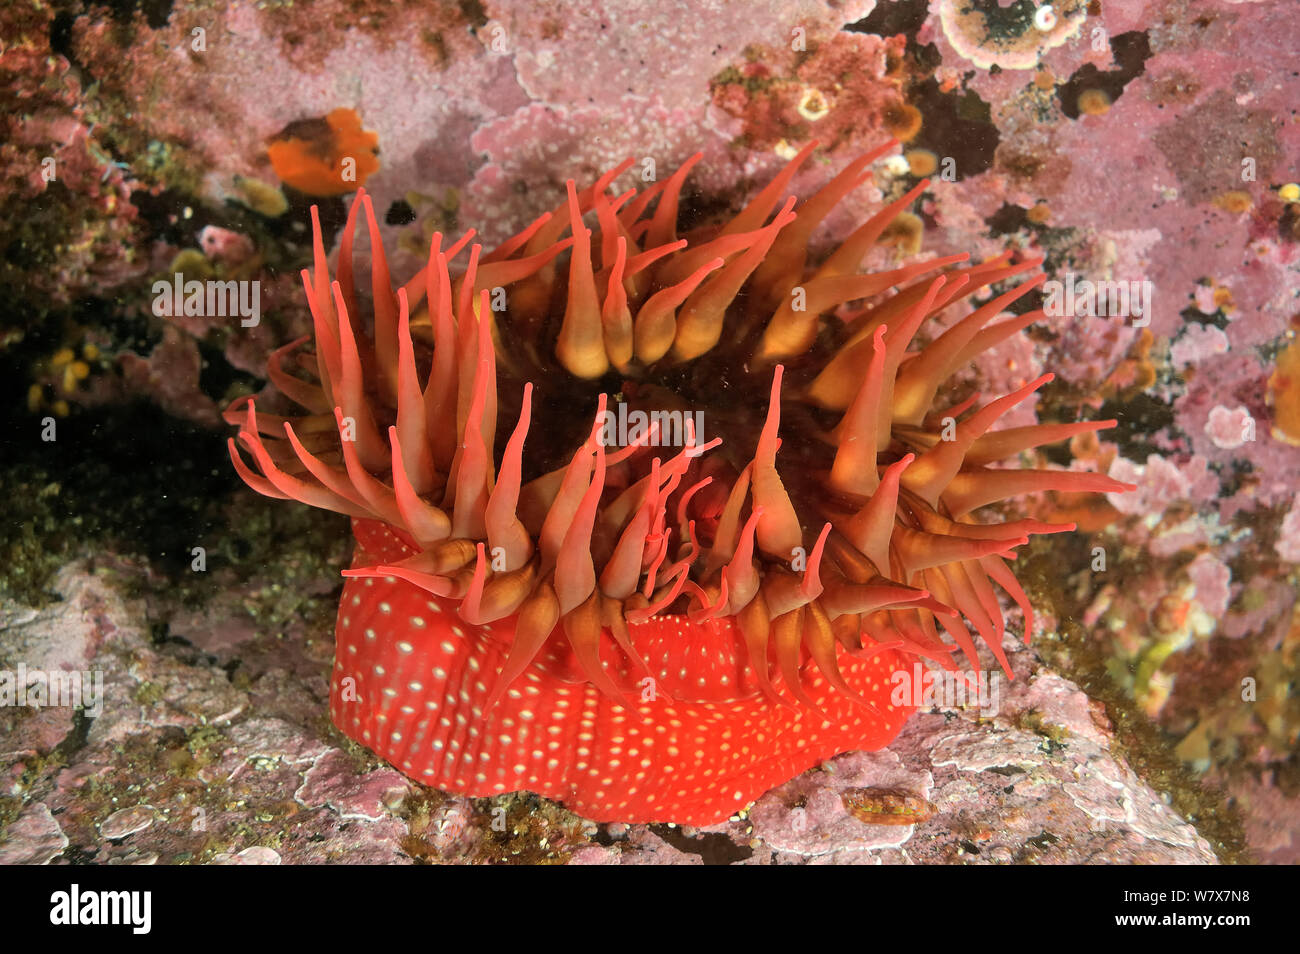 Weiß/rot-gepunktete Anemone Anemone entdeckt (Urticina lofotensis), Alaska, USA, Golf von Alaska. Im pazifischen Ozean. Stockfoto